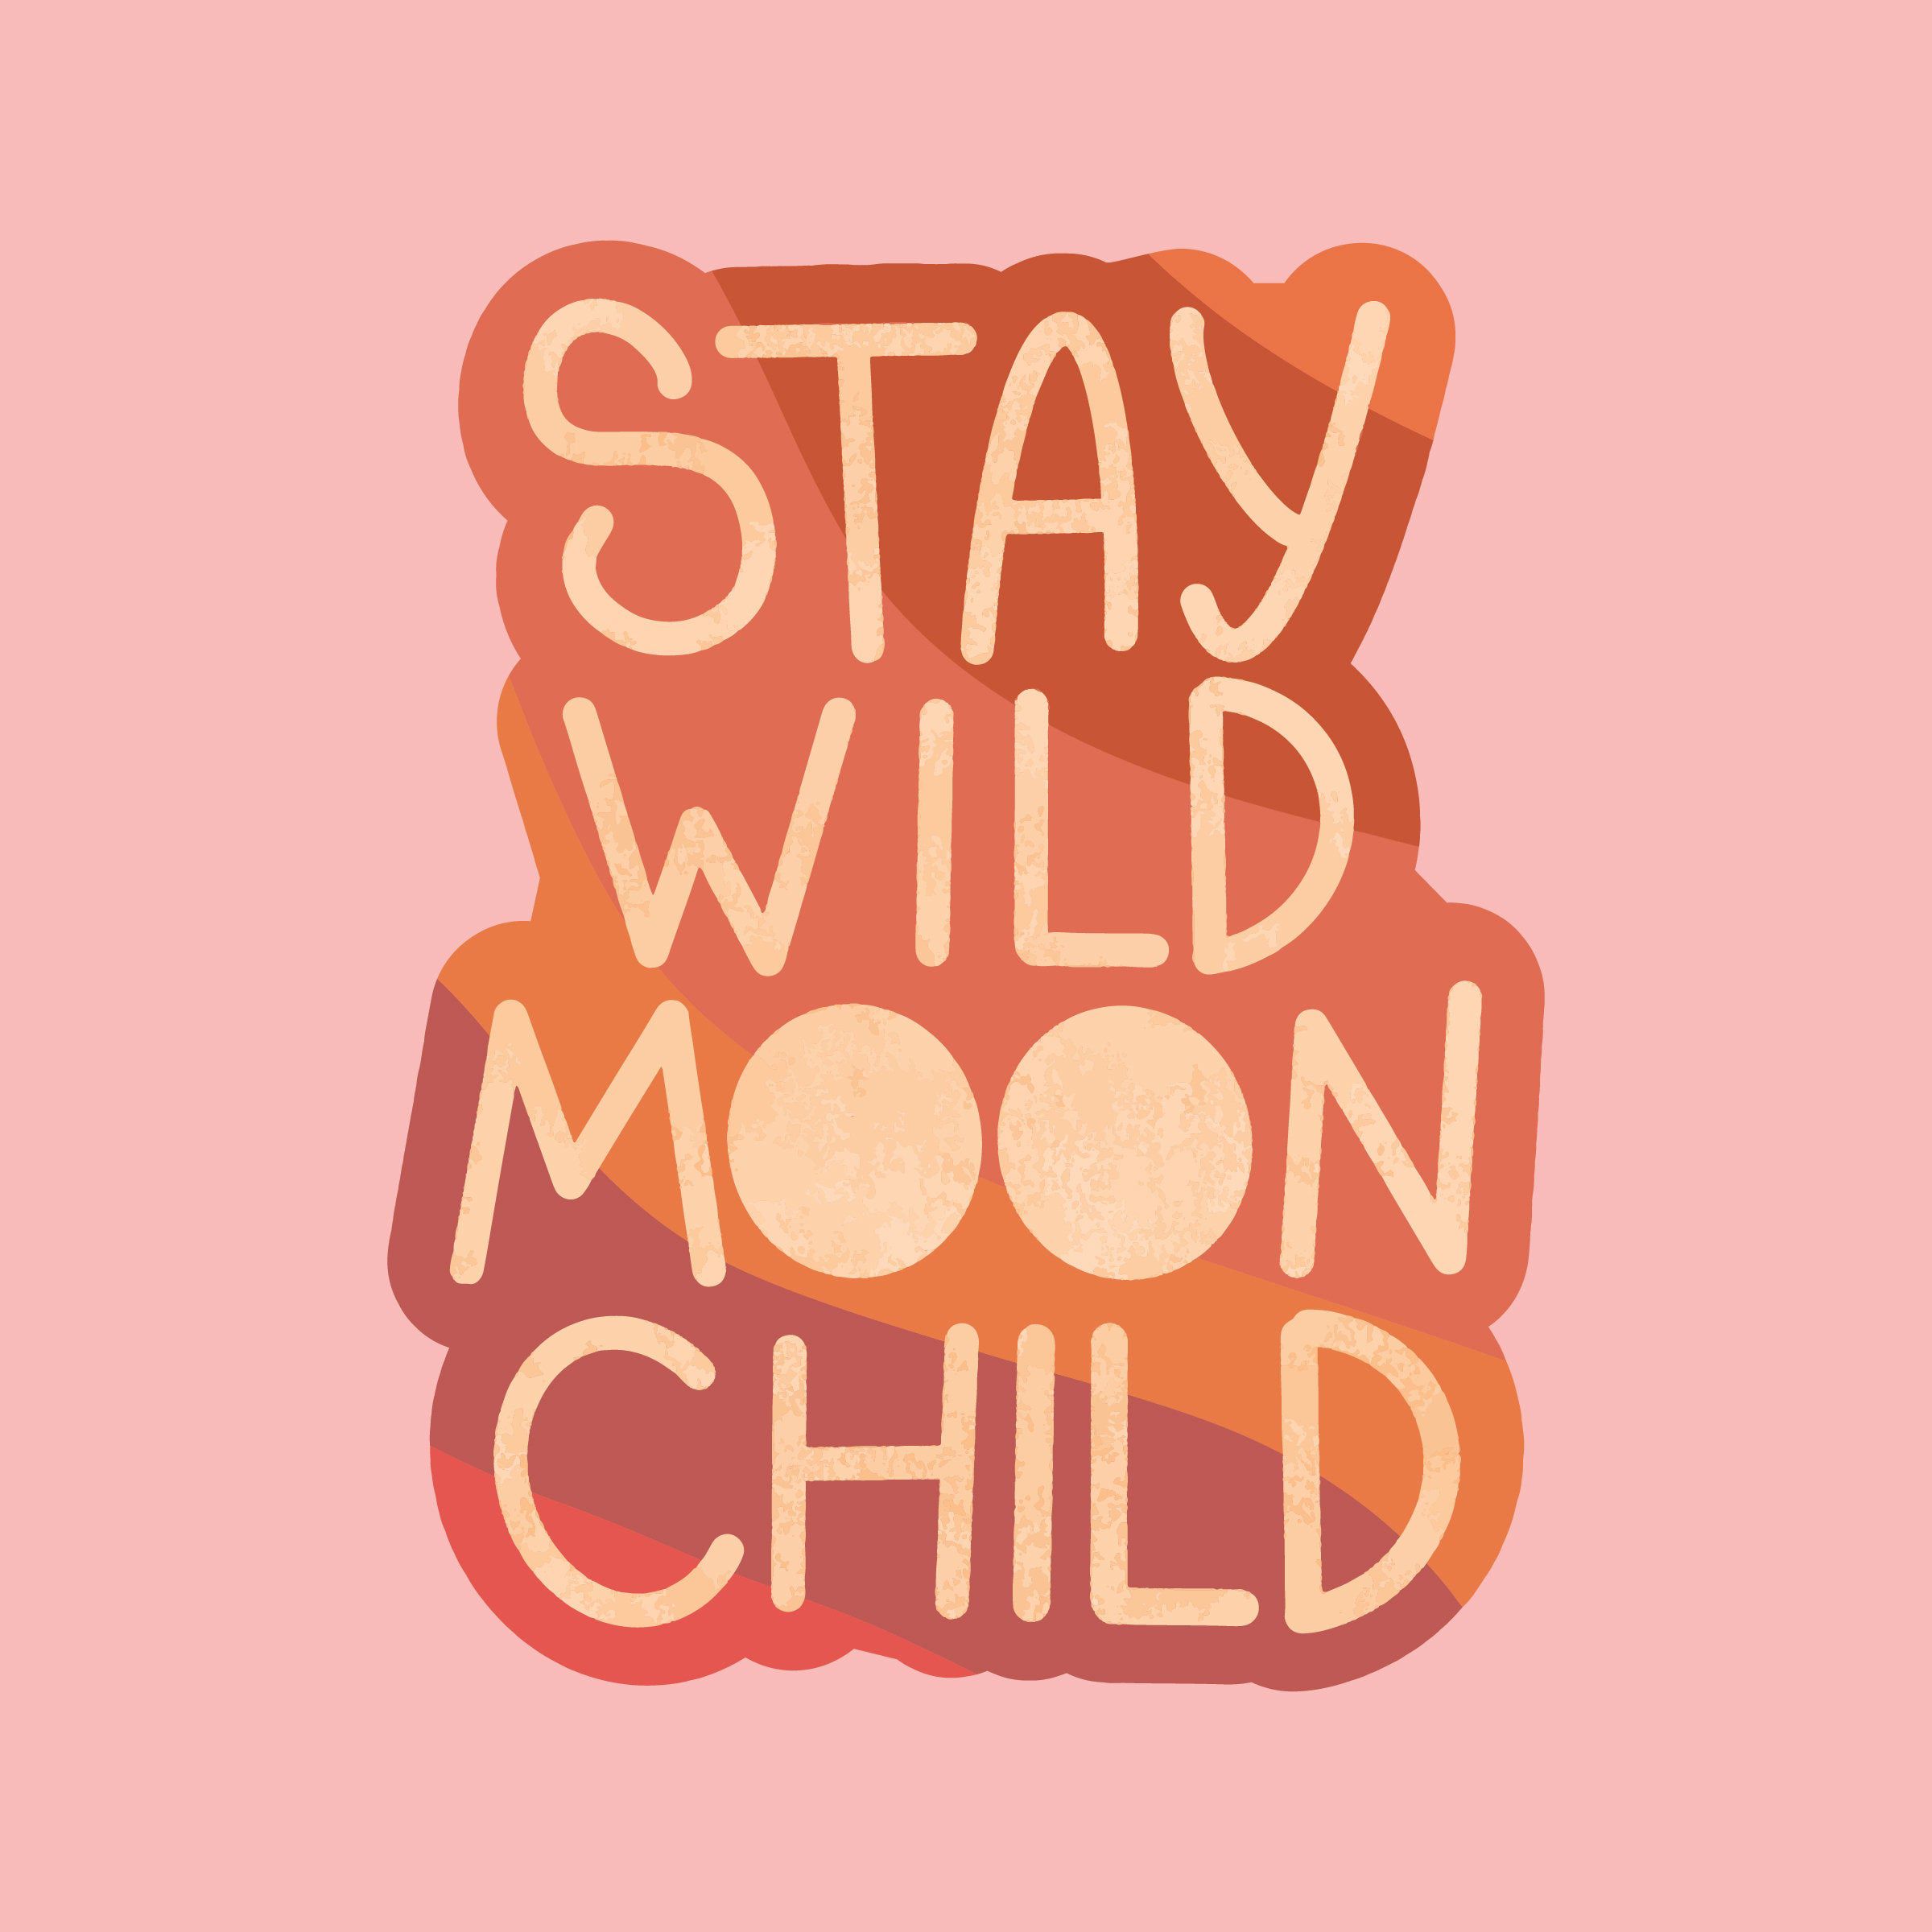 s t i c k e r i d e a s. Stay wild moon child, Moon child, Wild moon